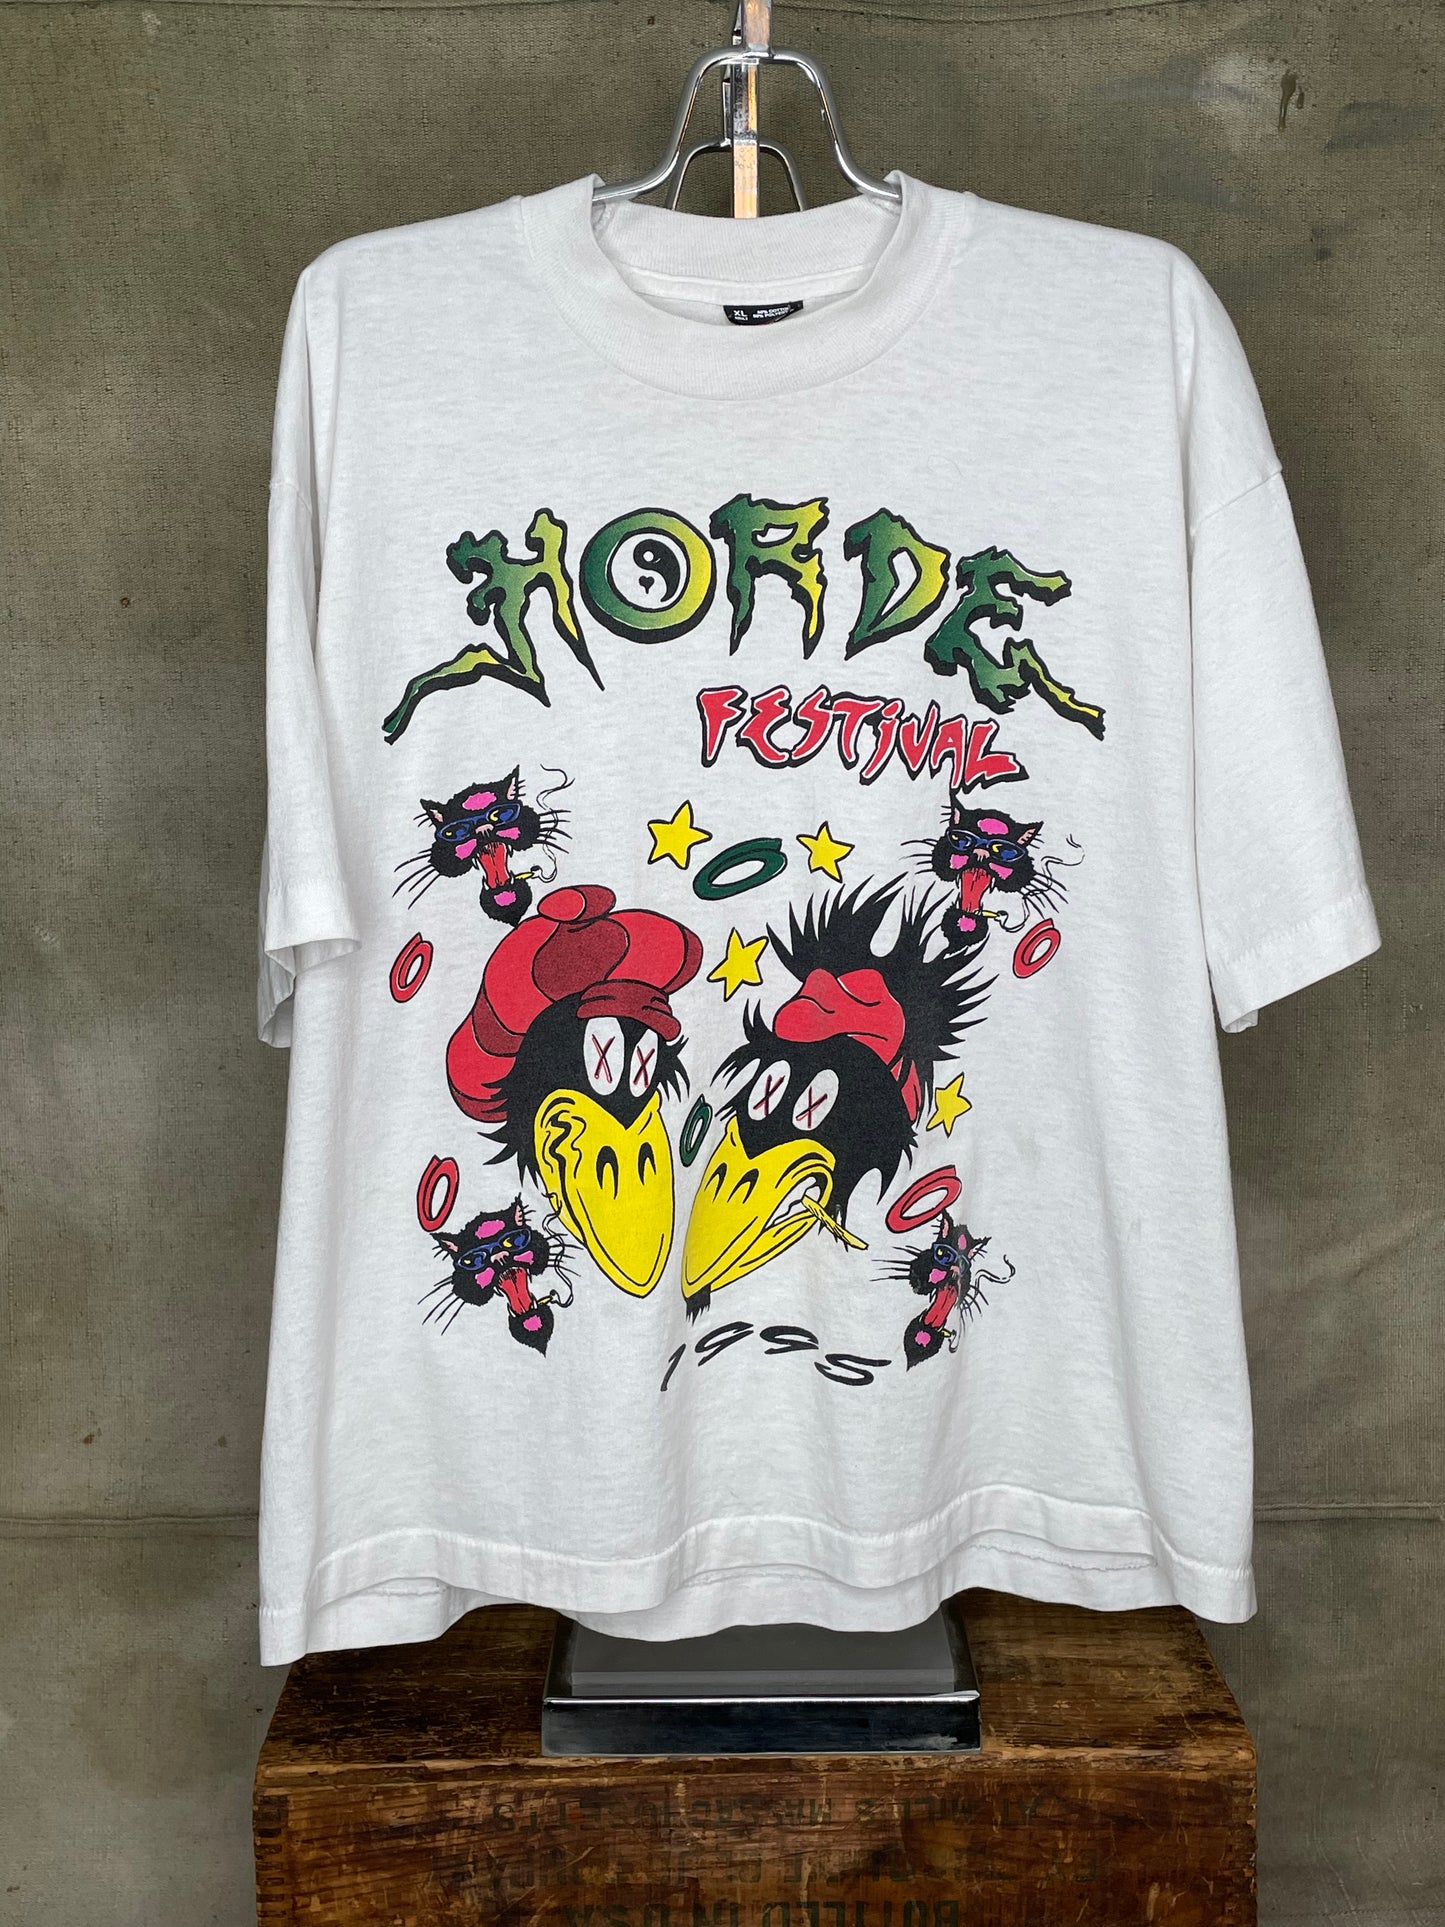 Vintage L Horde Festival 90s 1995 Concert Shirt